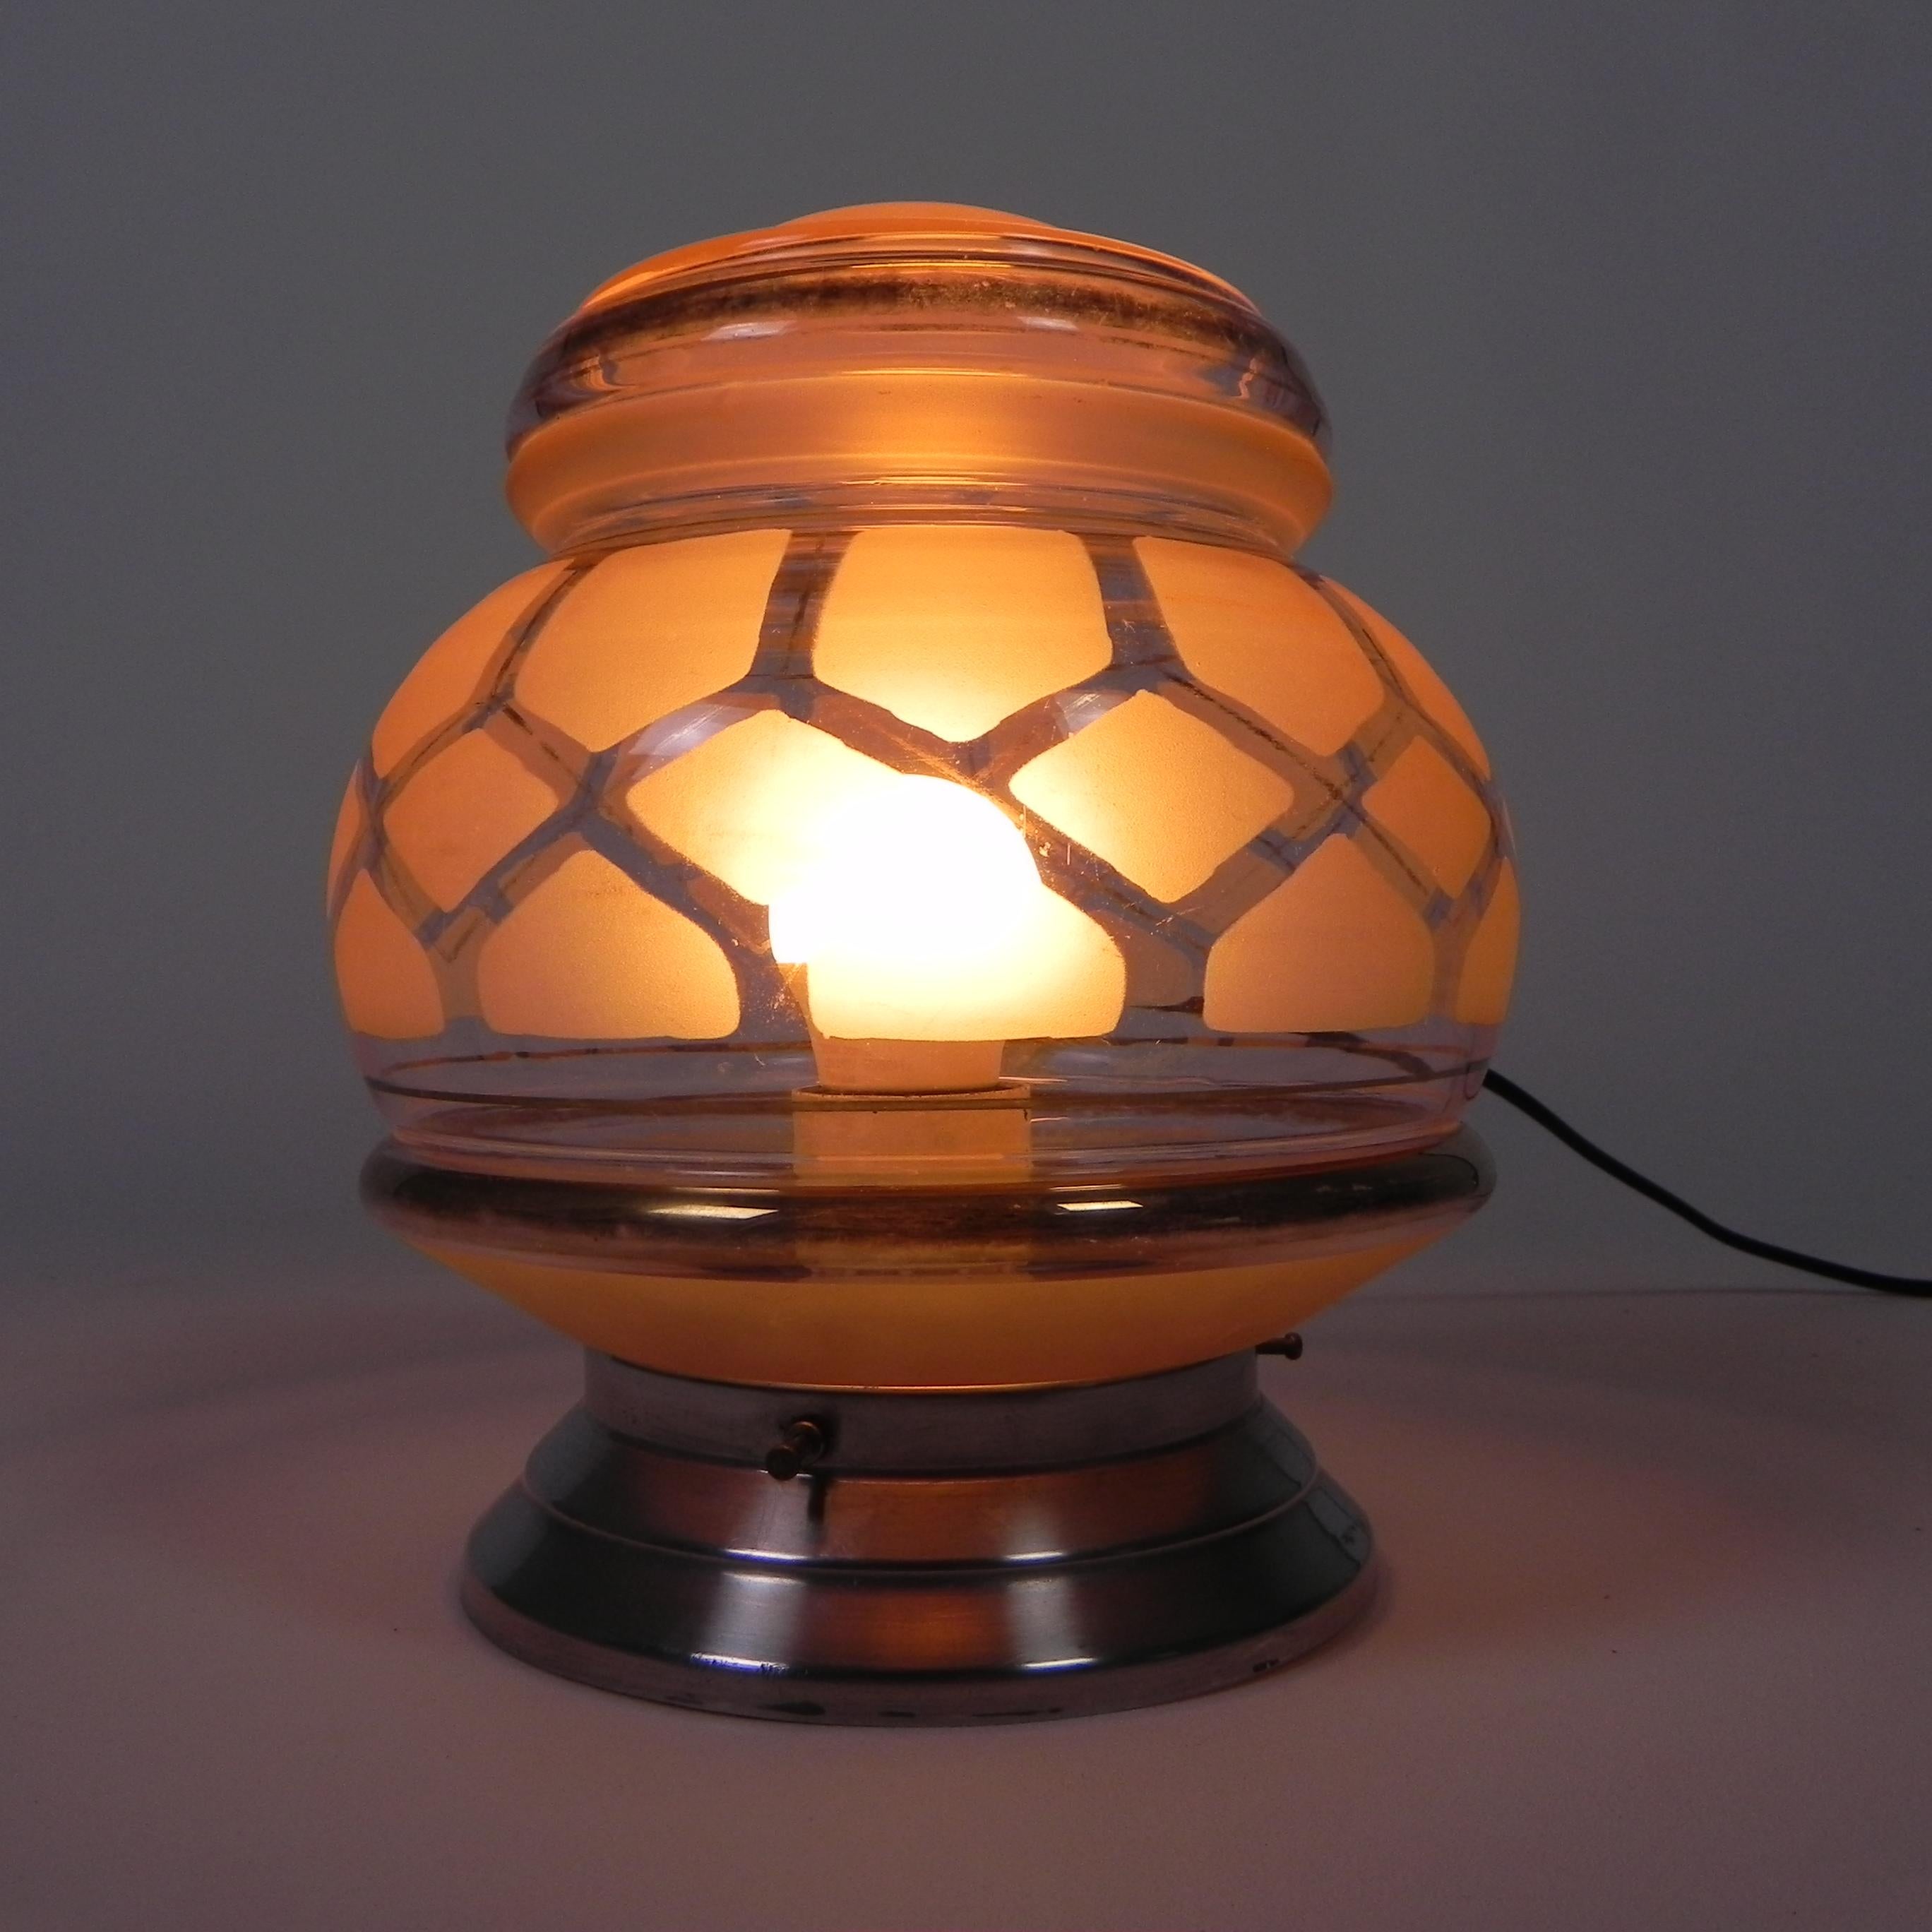 Hauteur totale : 22 cm.
Ø abat-jour en verre : 18 cm.
La lampe est dotée d'une grande douille (E27).
Origine : France, années 1930.
Matériau : aluminium / verre.
Toutes nos lampes sont adaptées aux lampes LED.